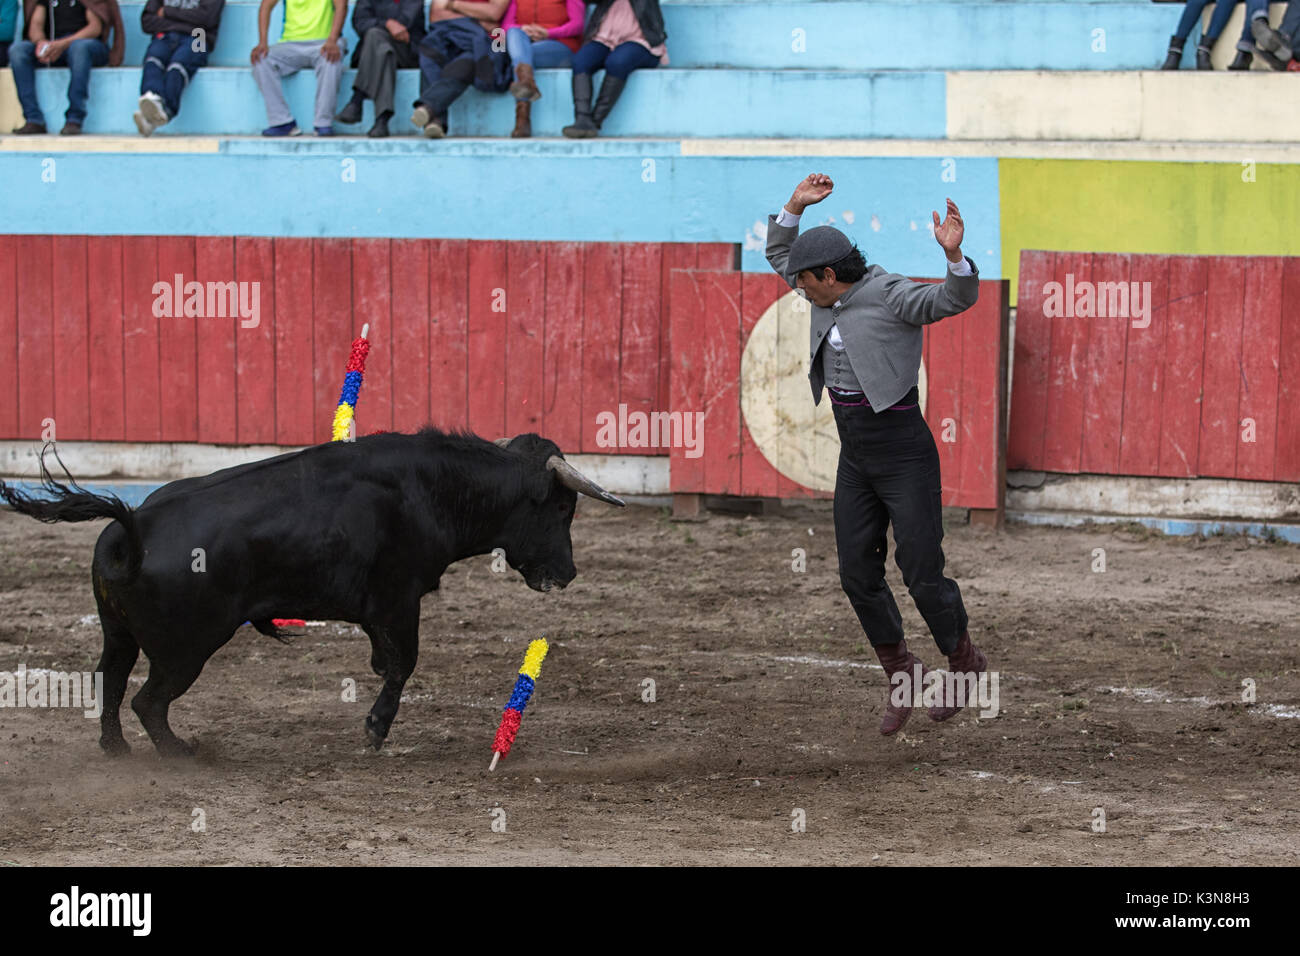 Giugno 18, 2017 Pujili, Ecuador: picador salta in alto nella parte anteriore della carica bull nell'arena Foto Stock